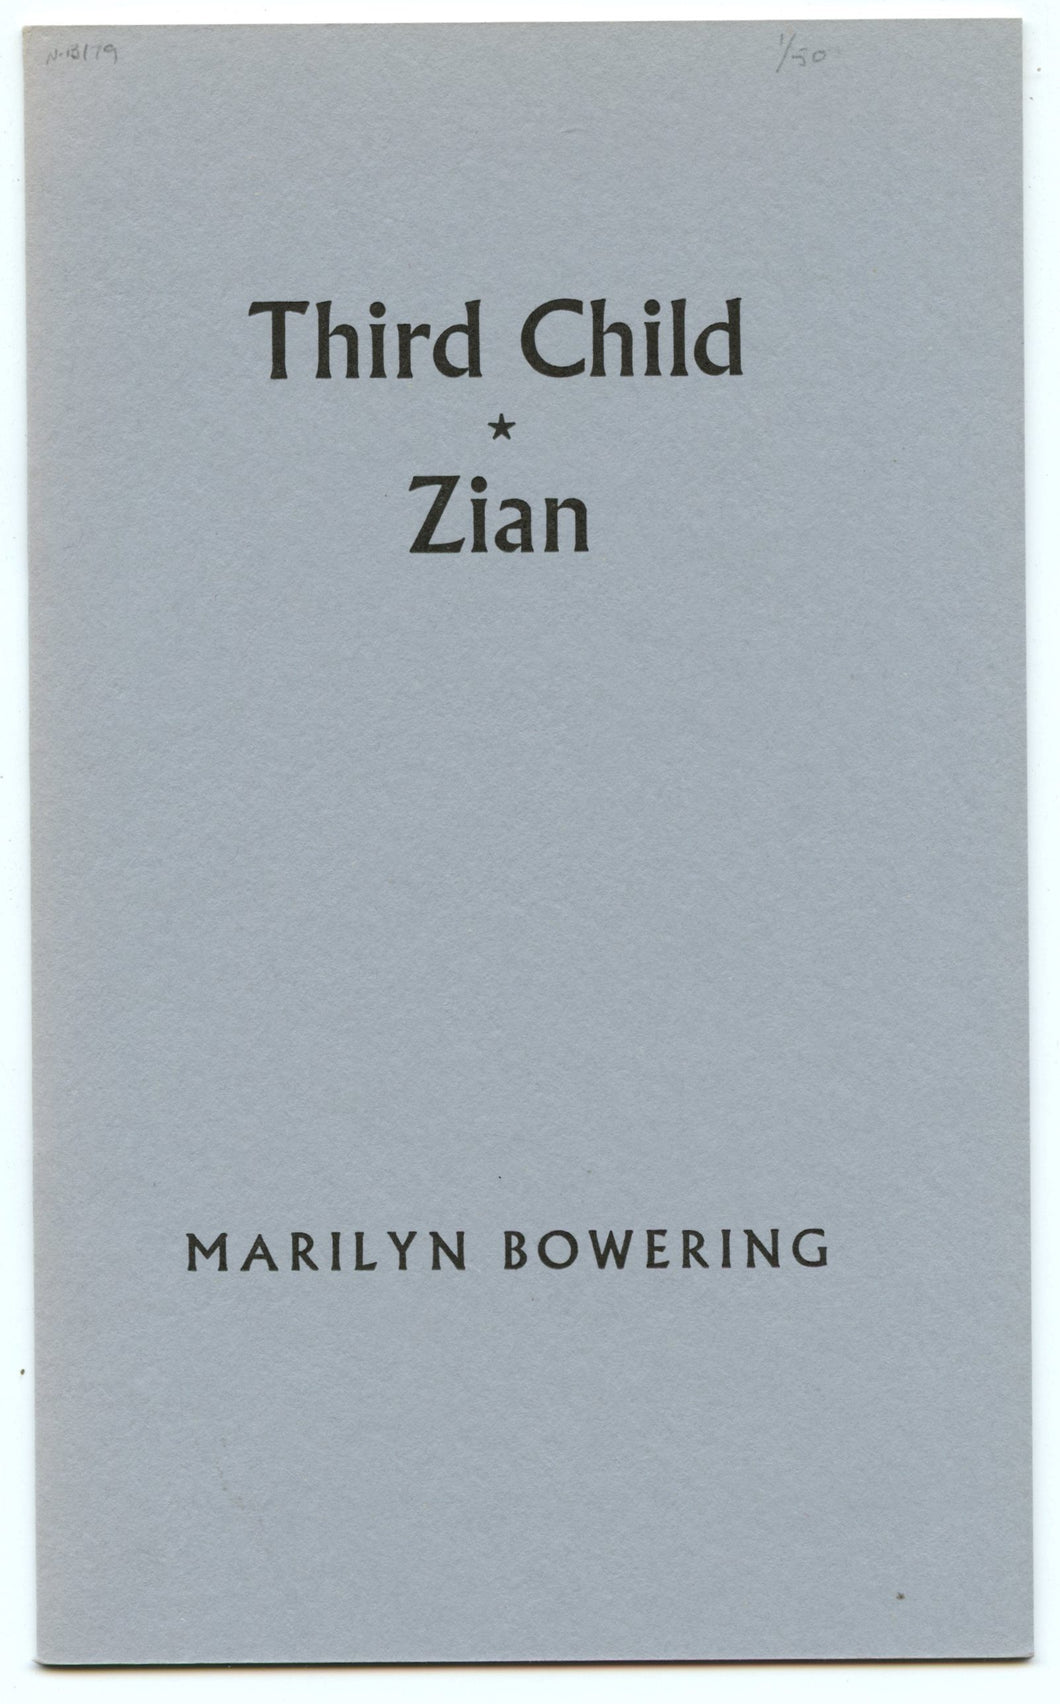 Third Child Zian